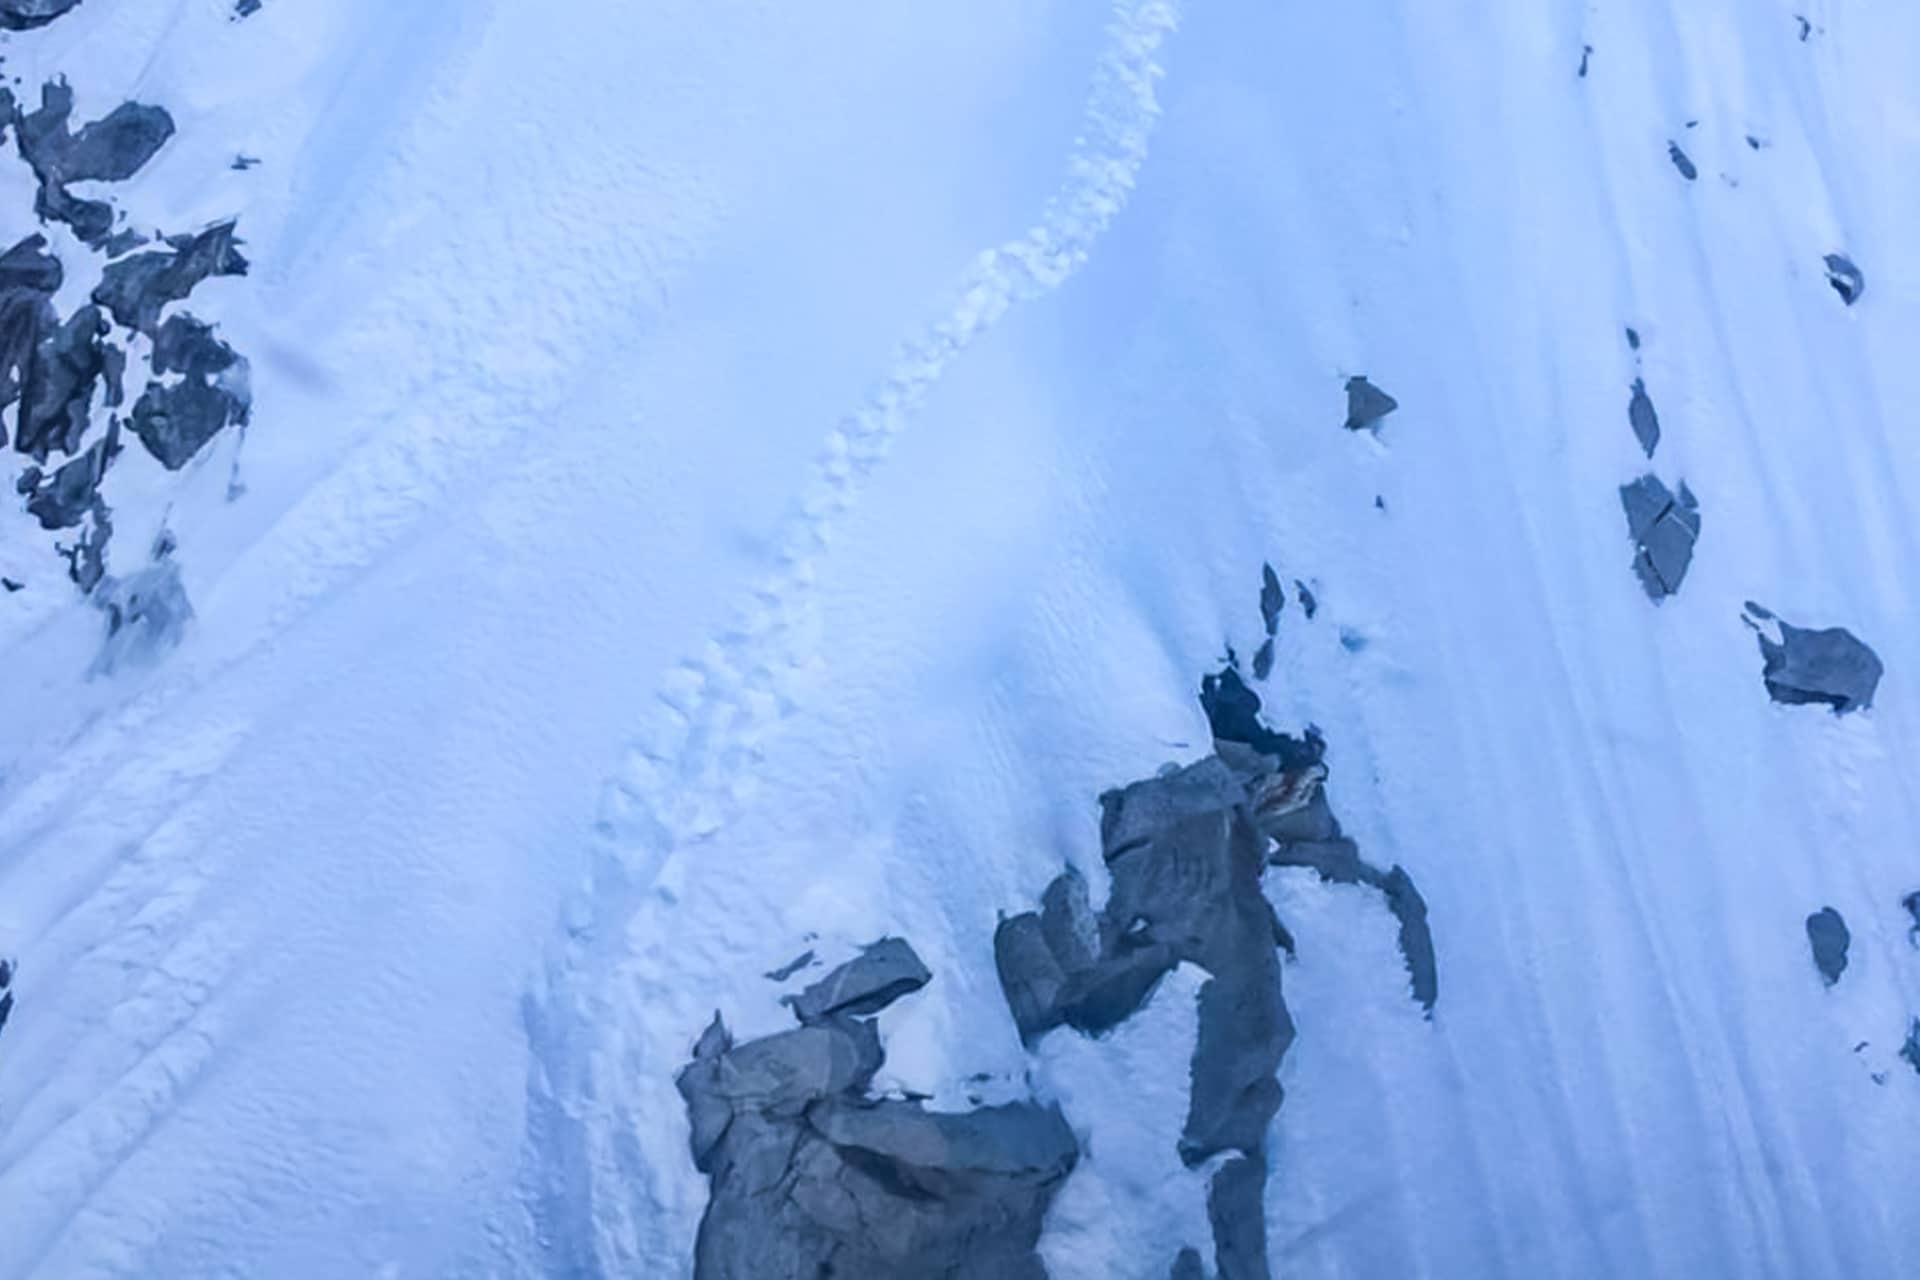 Последние следы пропавших альпинистов на склоне горы Мингбо Эйгер / Мингбо Идер (Mingbo Eiger / Minbo Ider, 6071 метров. Фото сделано с борта спасательного вертолета